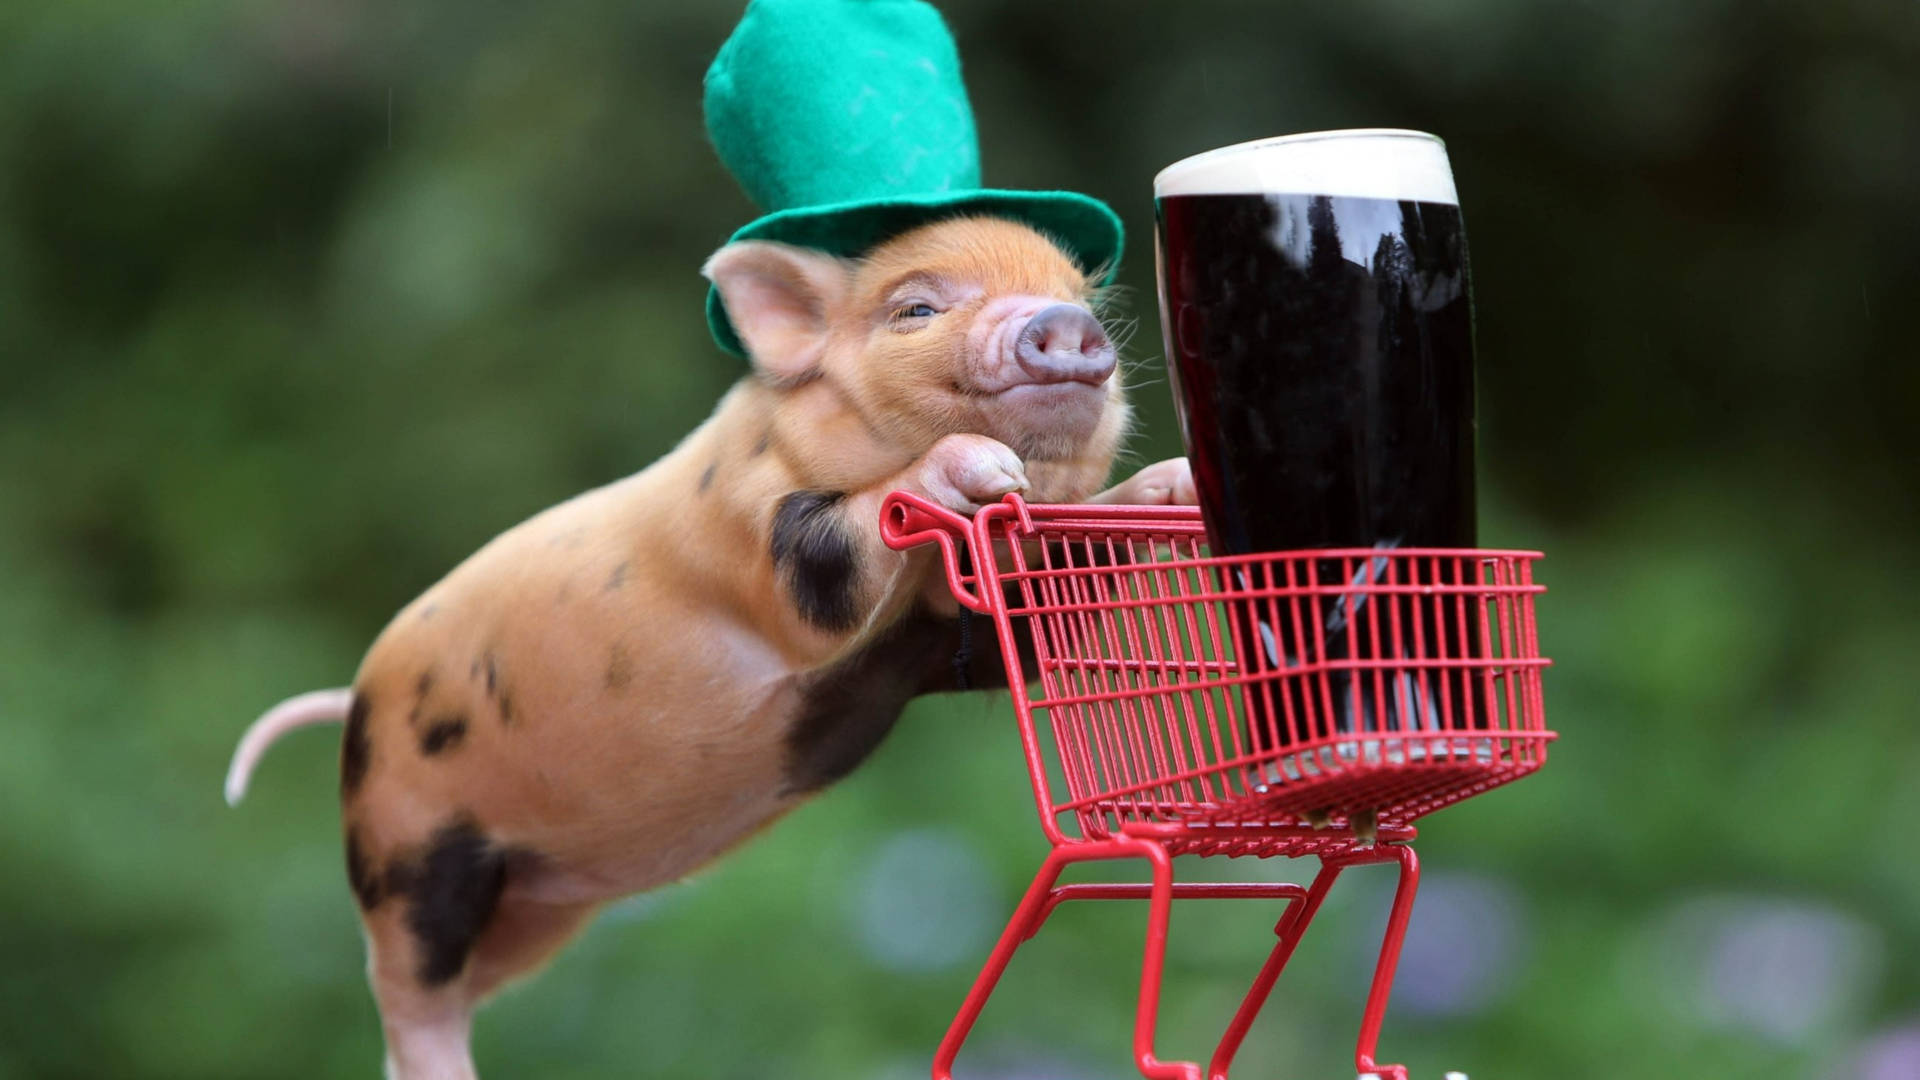 Pig At Saint Patrick's Day Wallpaper